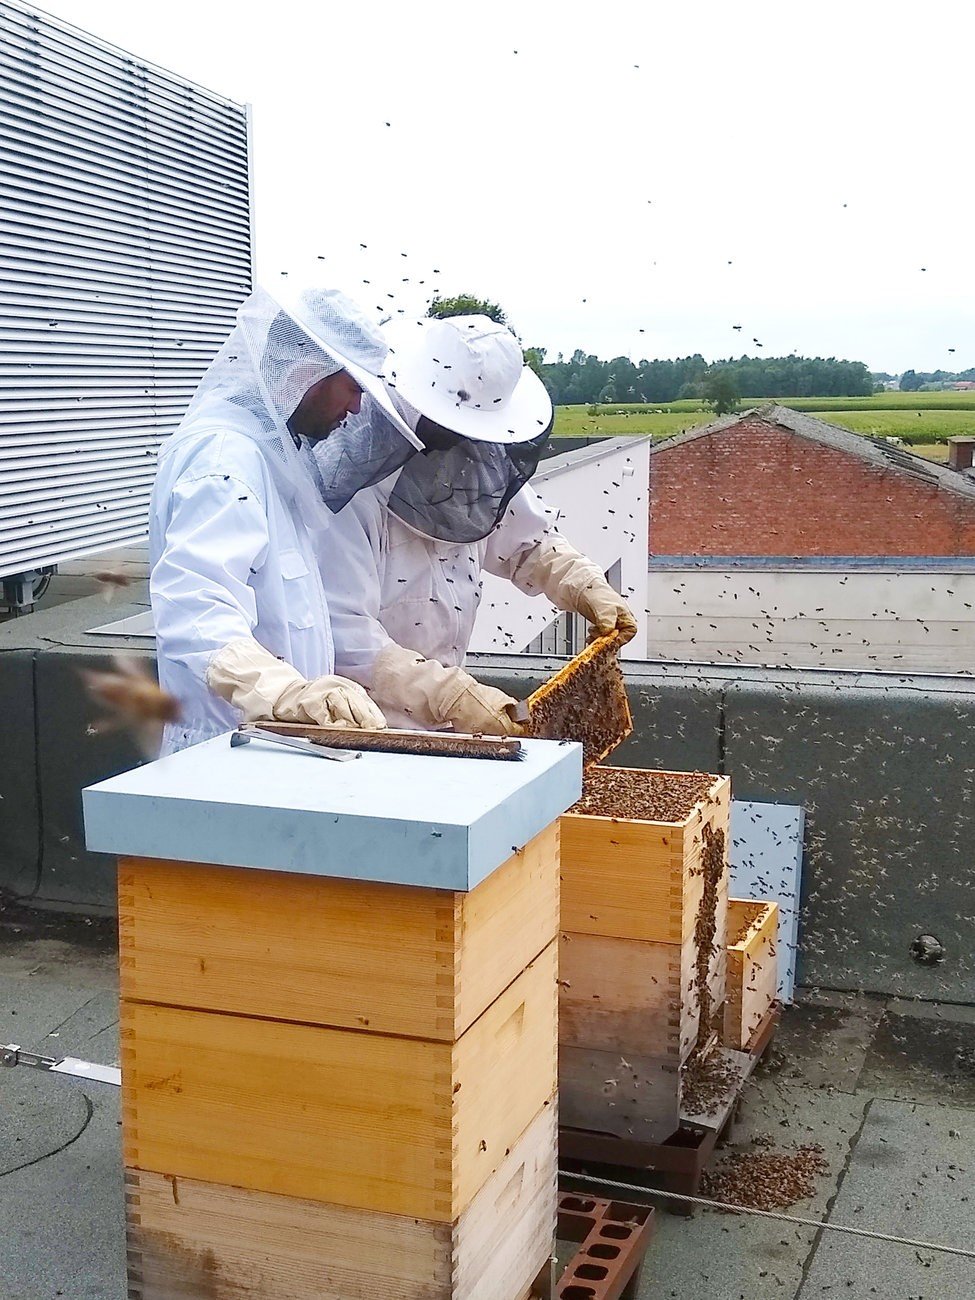 Onze collega's verzorgen de Fluvius-bijen